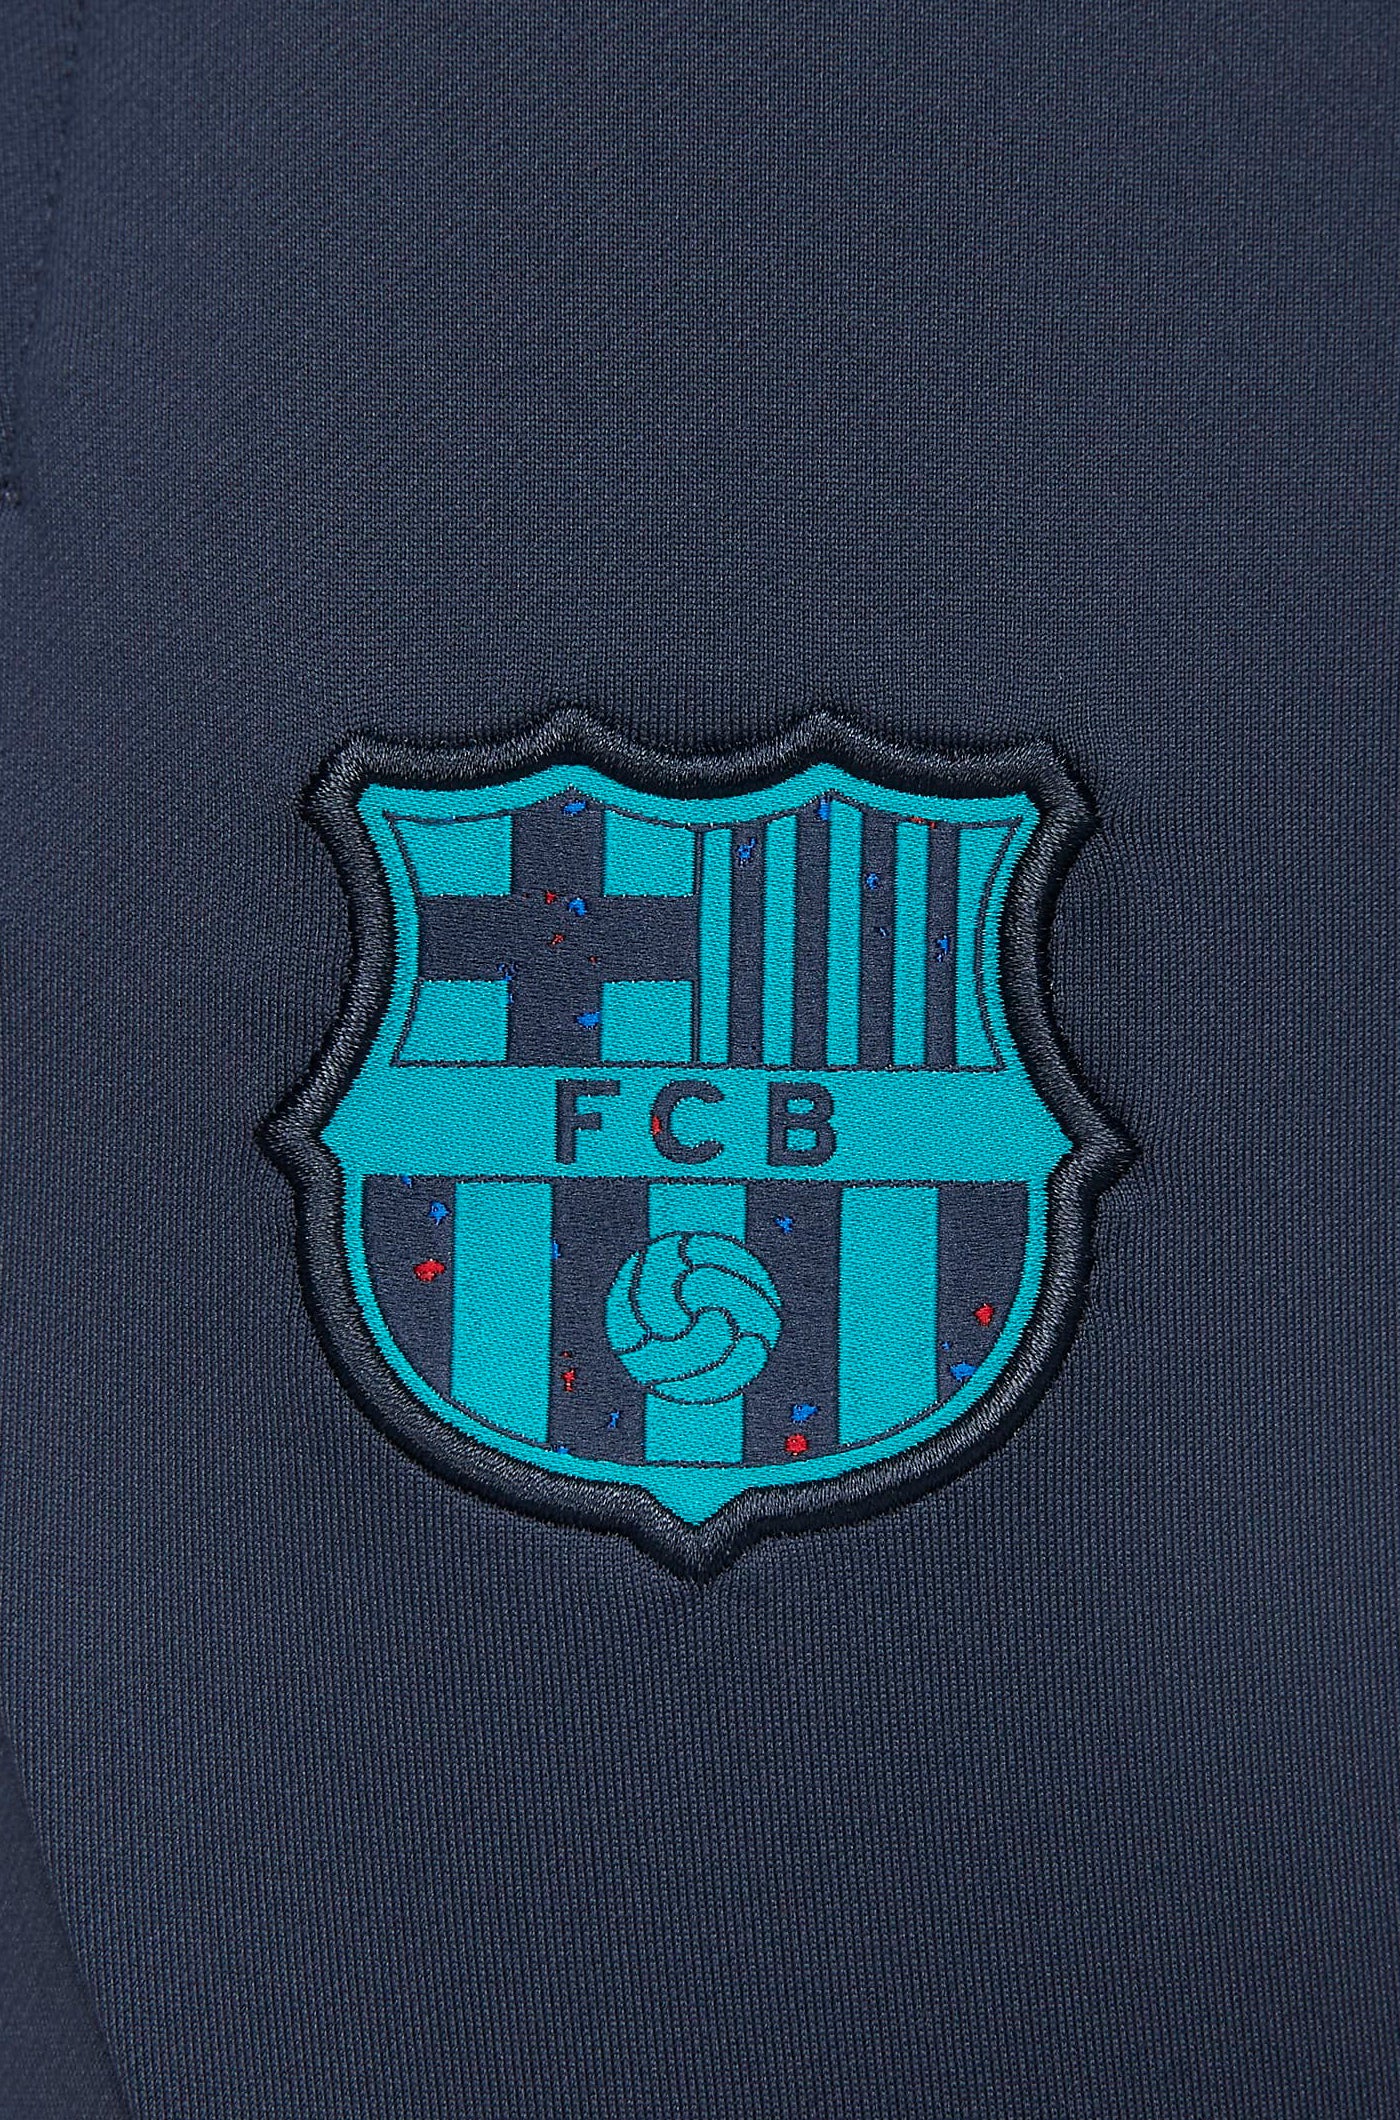 Pantalón entrenamiento FC Barcelona 23/24